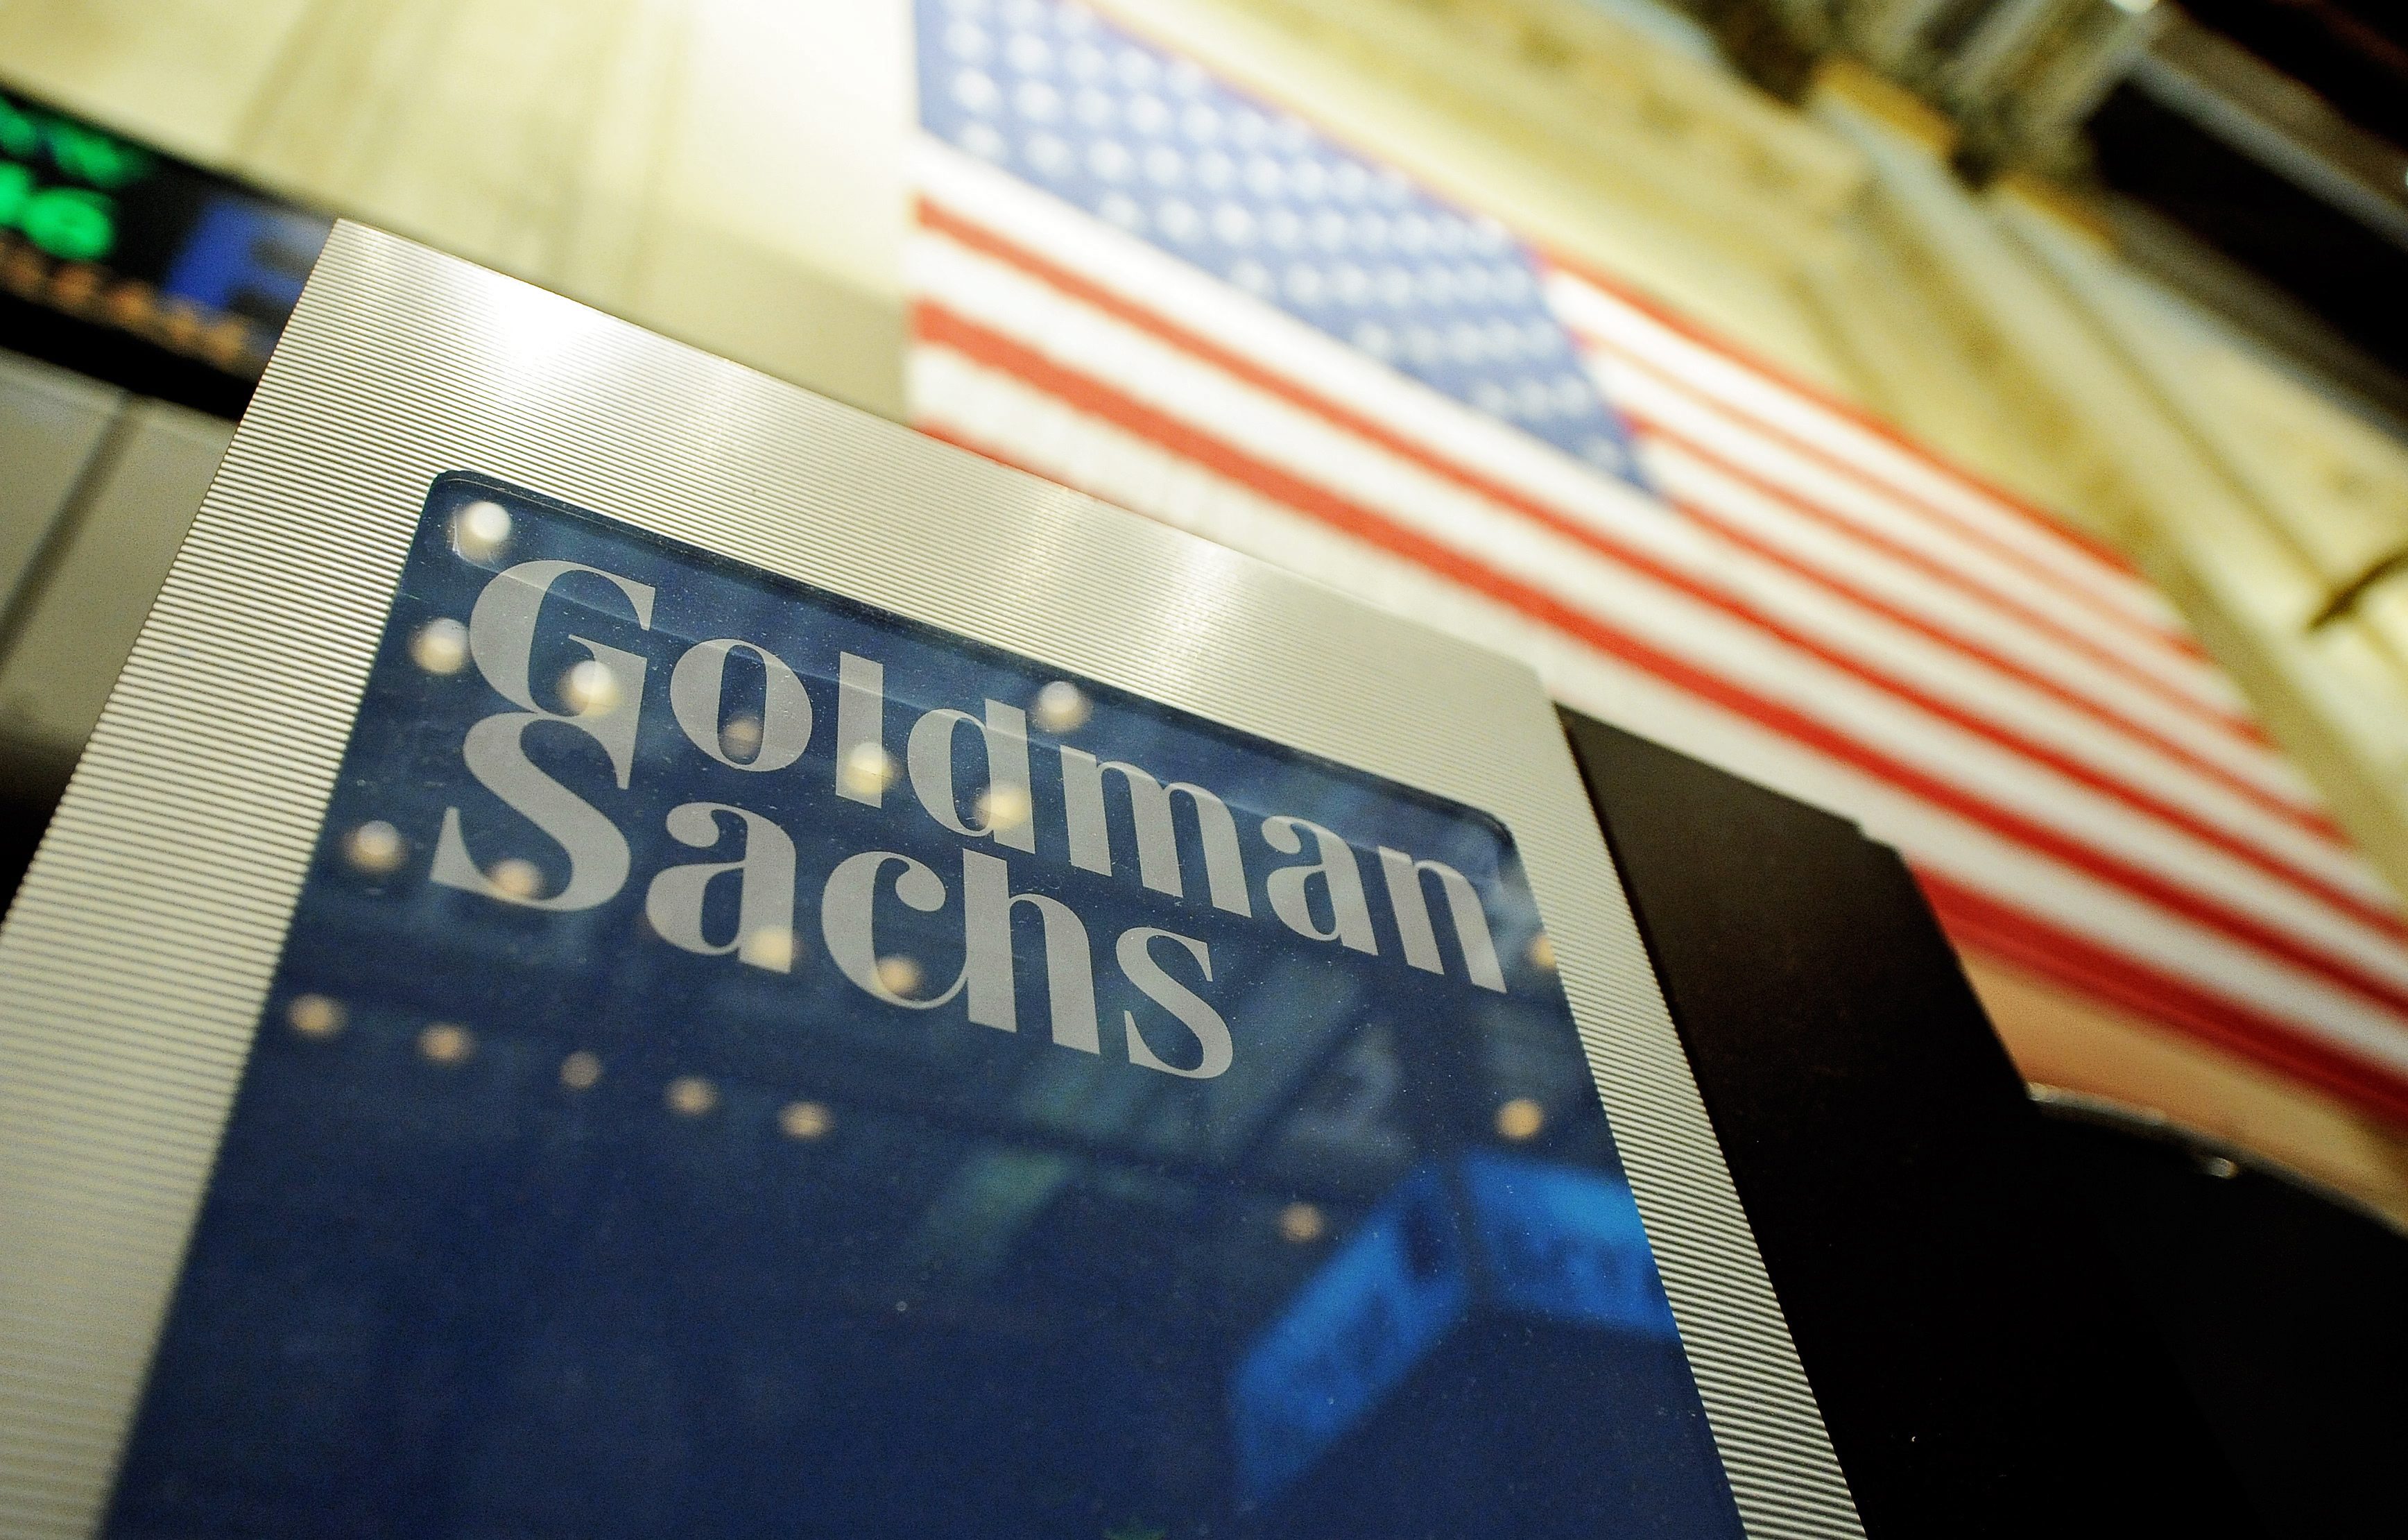 Je hoeft maar 1 dollar op een nieuwe spaarrekening van Goldman Sachs te zetten om er een te openen. Dat is een omslag voor de zakenbank, die in het klantenbestand tot nu toe voornamelijk klanten met veel geld en macht heeft staan.